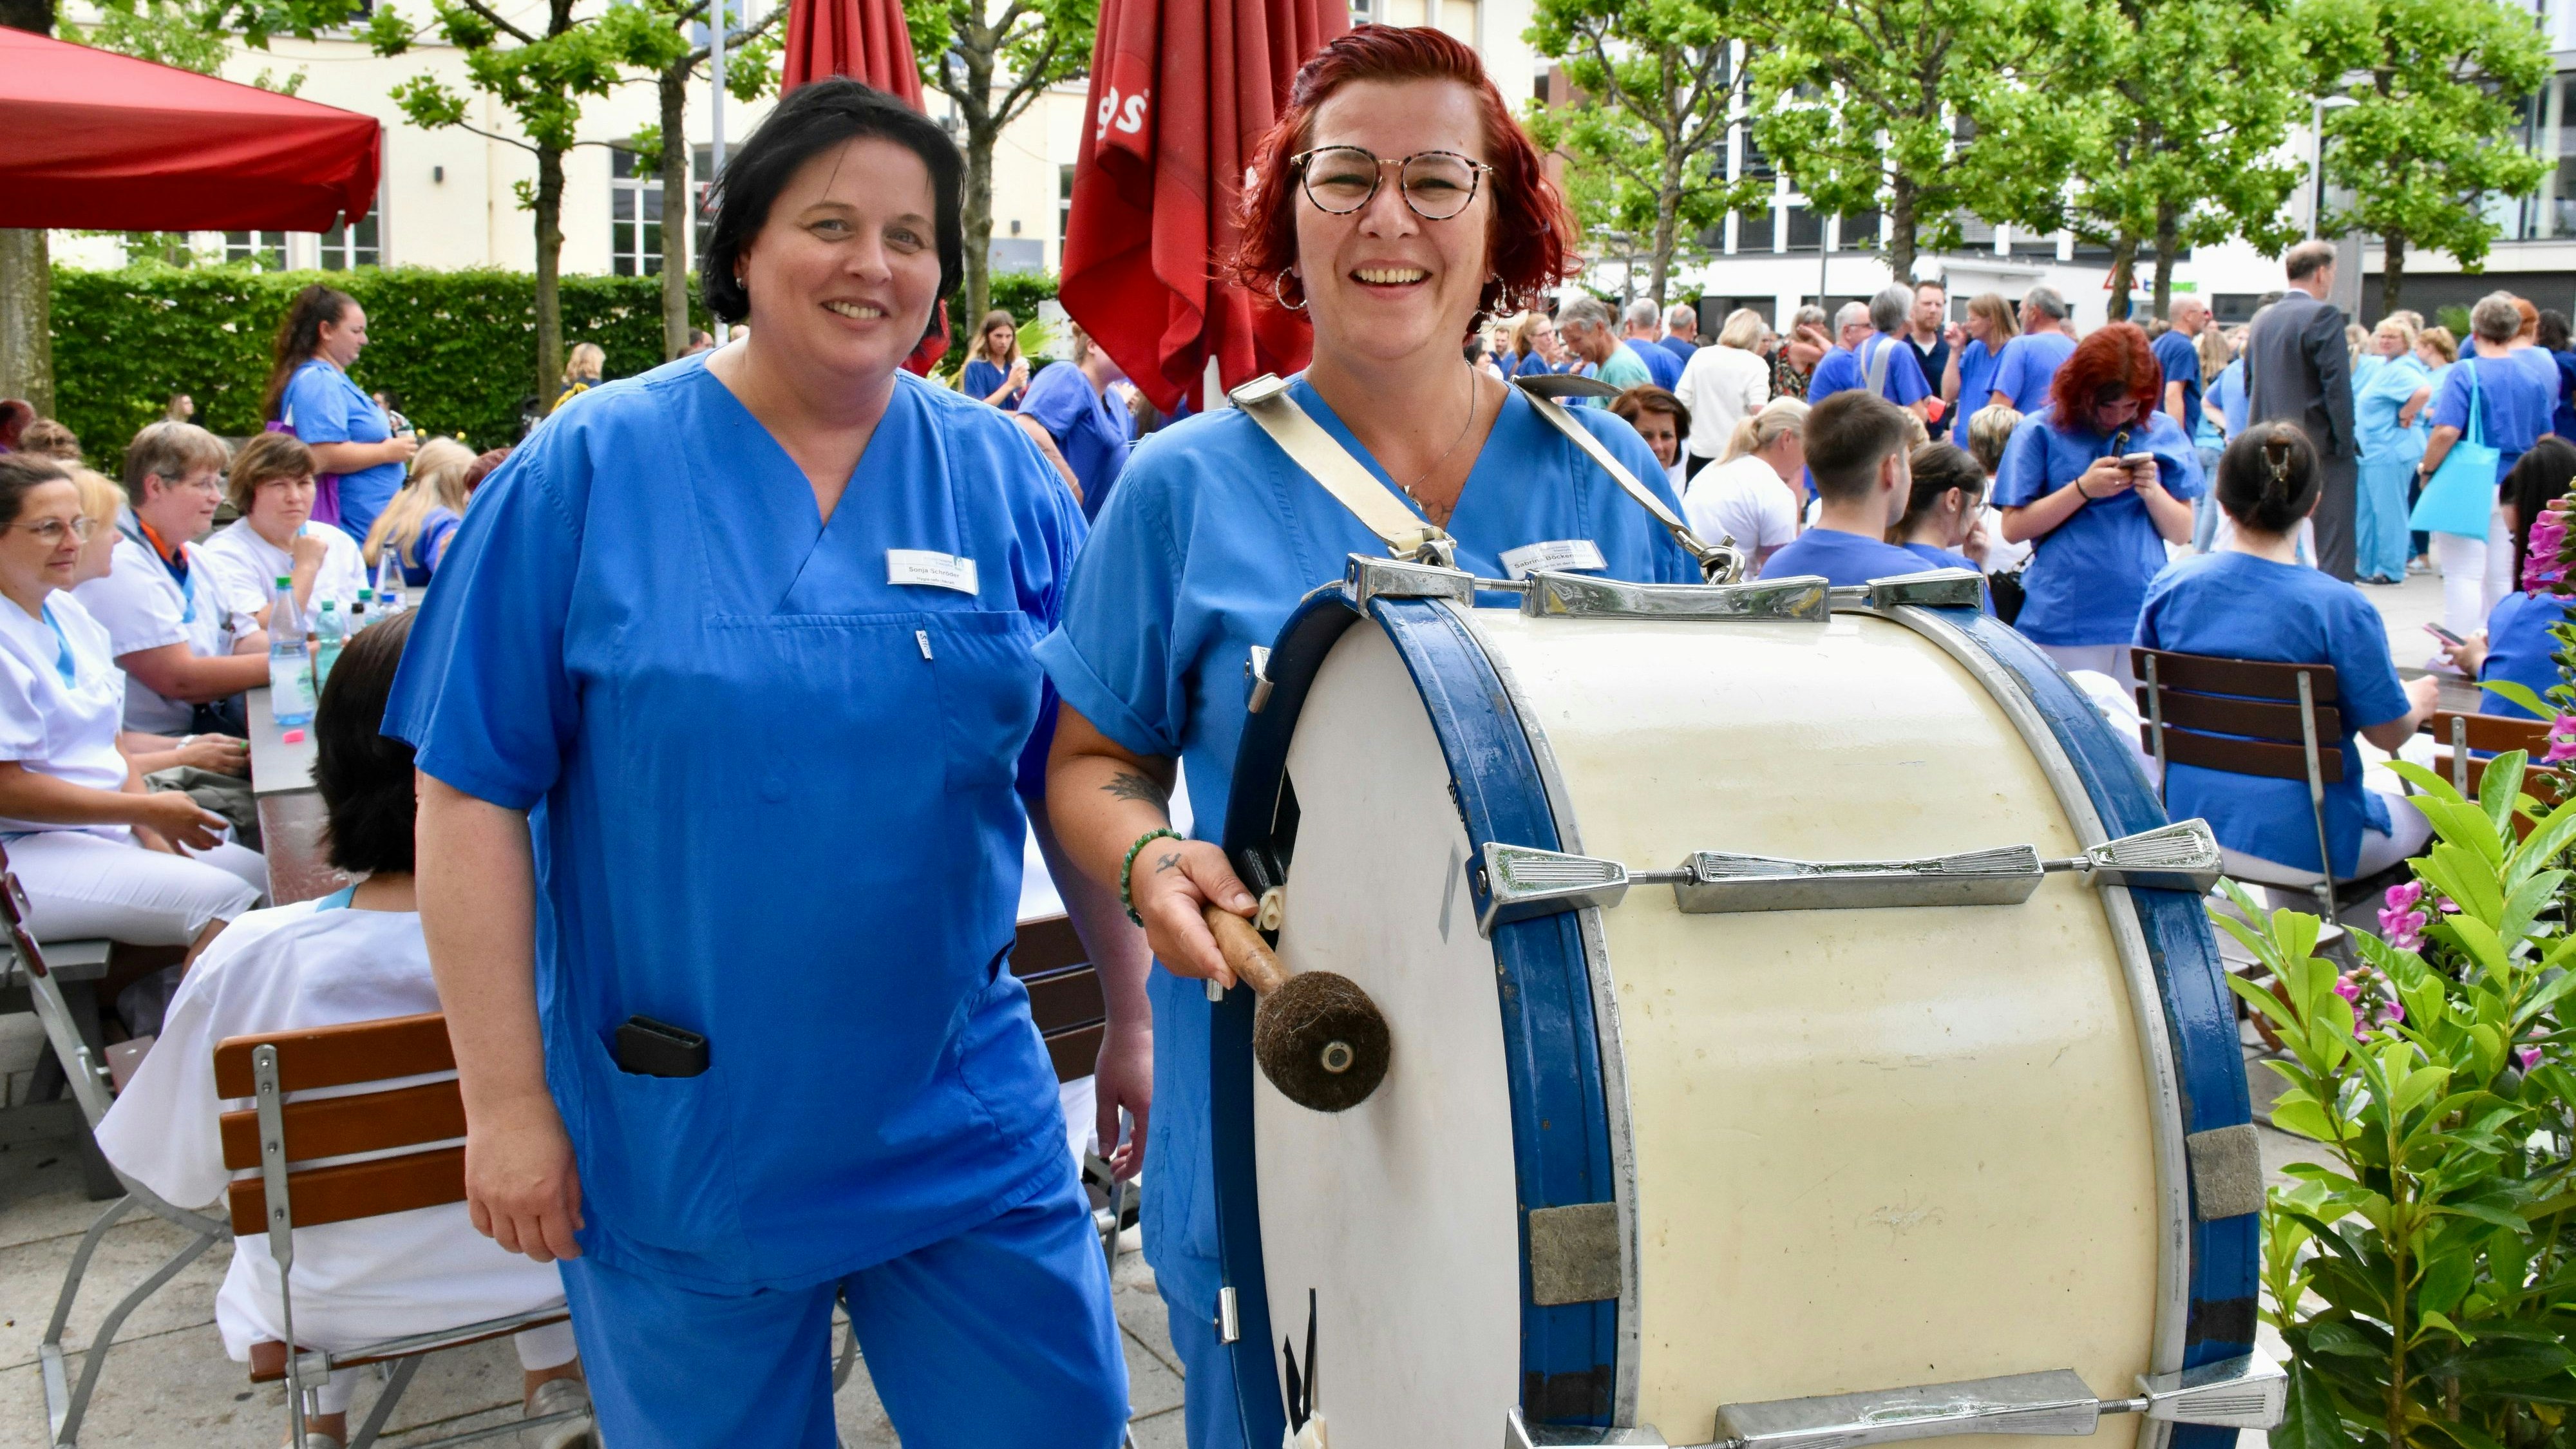 Hygienefachkraft Sonja Schröder (links) und Hygieneassistentin Sabrina Böckermann vom Friesoyther Krankenhaus machten mit ihrer Trommel in Oldenburg mächtig Radau. Foto: Berg